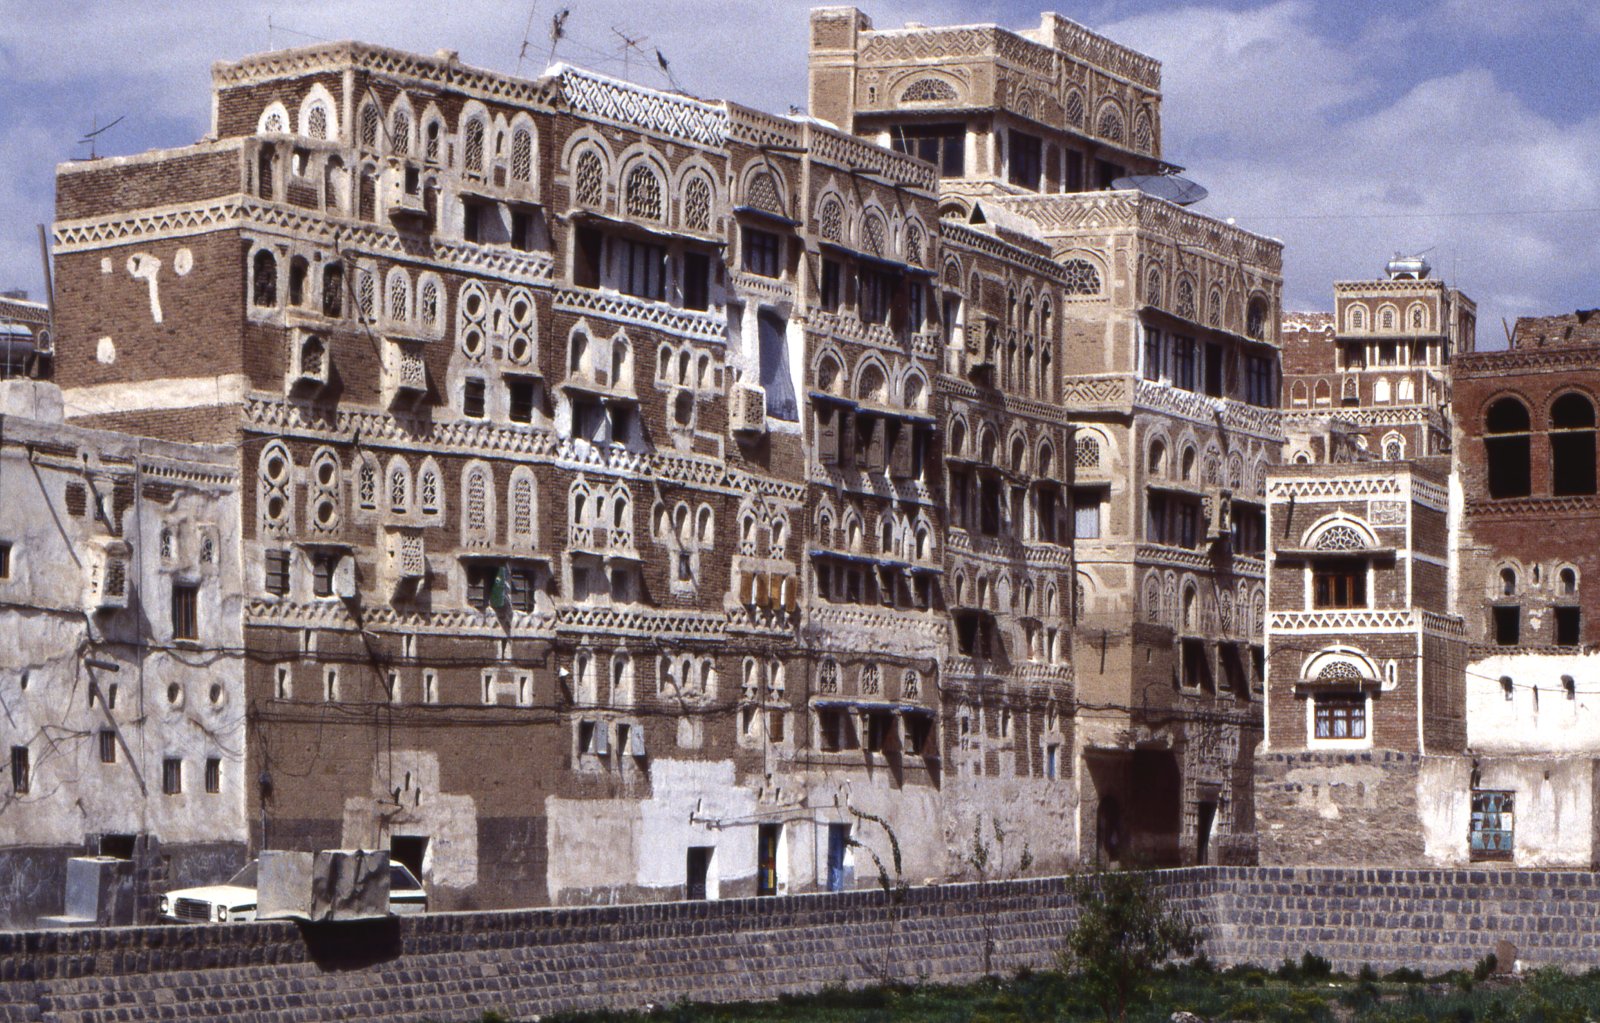 Sana' a panorama